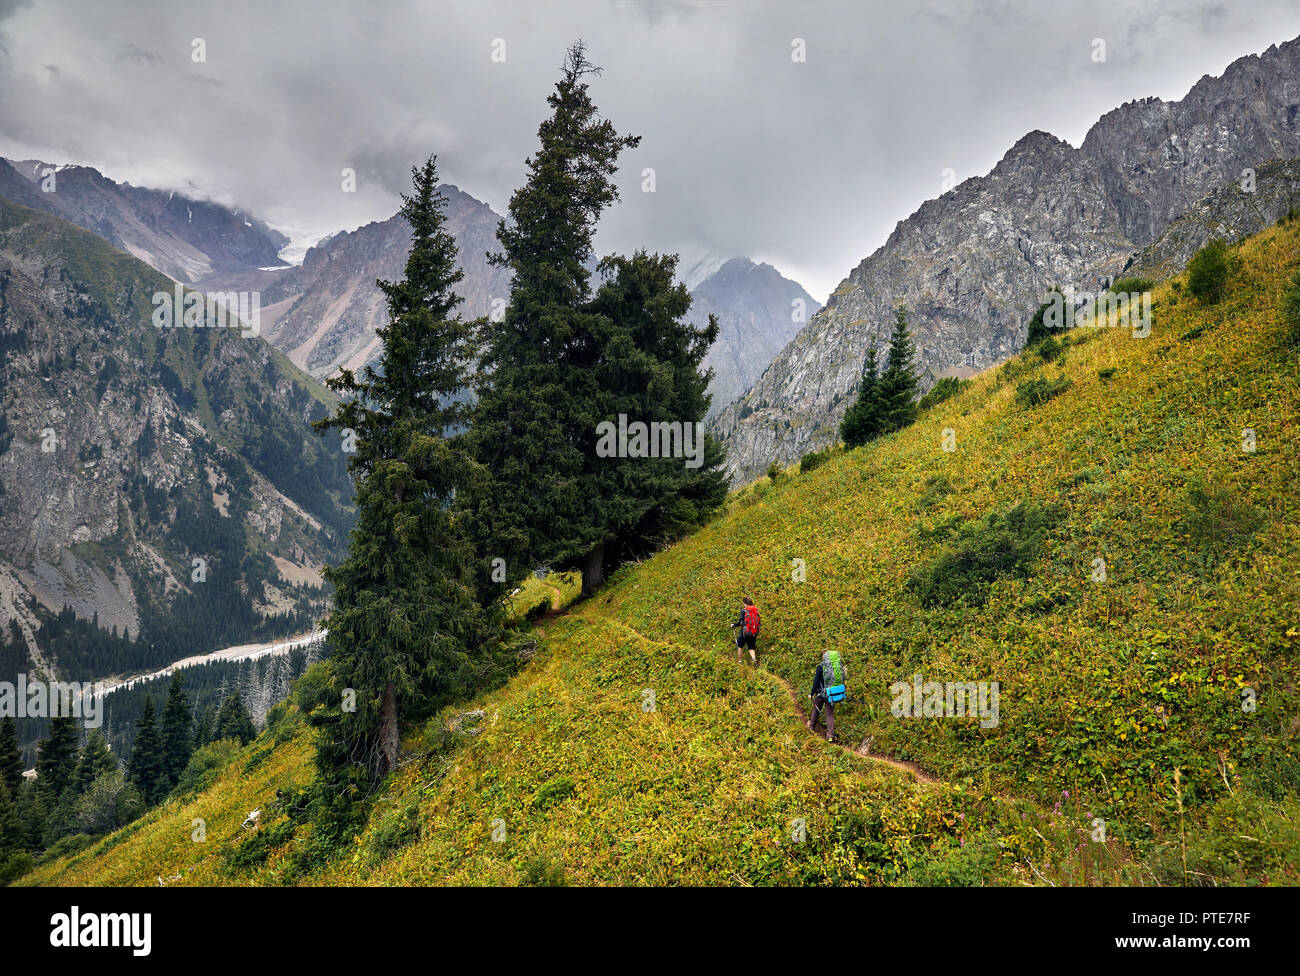 Zwei Touristen mit Rucksäcken zu Fuß auf den Weg in den Berg Tal bei bedecktem Himmel Hintergrund. Reisen Abenteuer Konzept Stockfoto